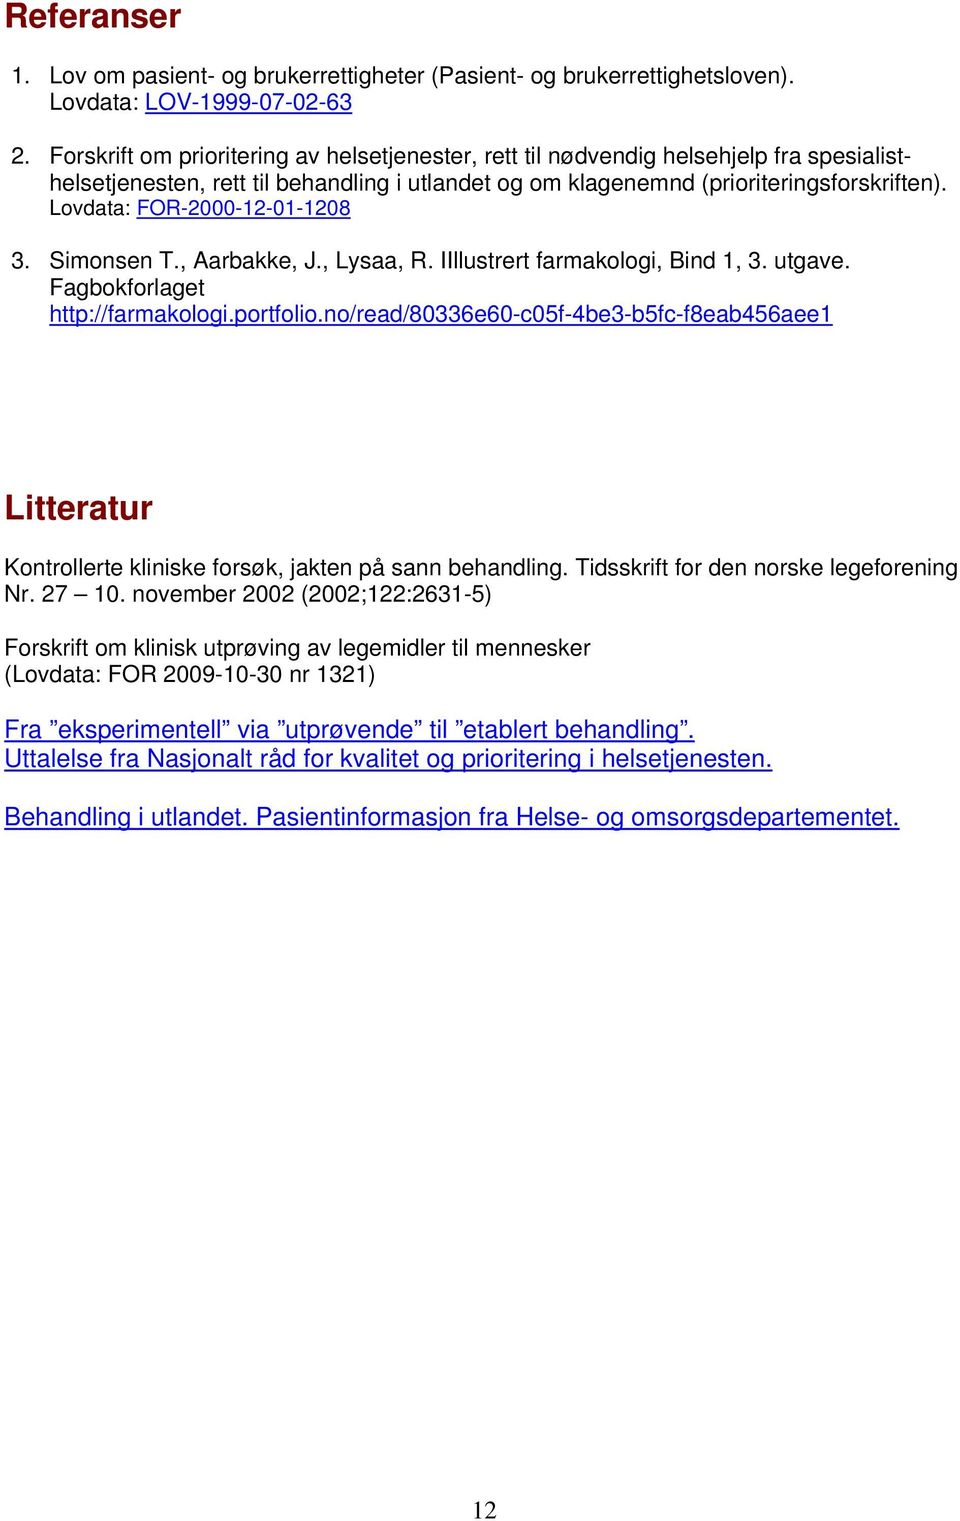 Lovdata: FOR-2000-12-01-1208 3. Simonsen T., Aarbakke, J., Lysaa, R. IIllustrert farmakologi, Bind 1, 3. utgave. Fagbokforlaget http://farmakologi.portfolio.